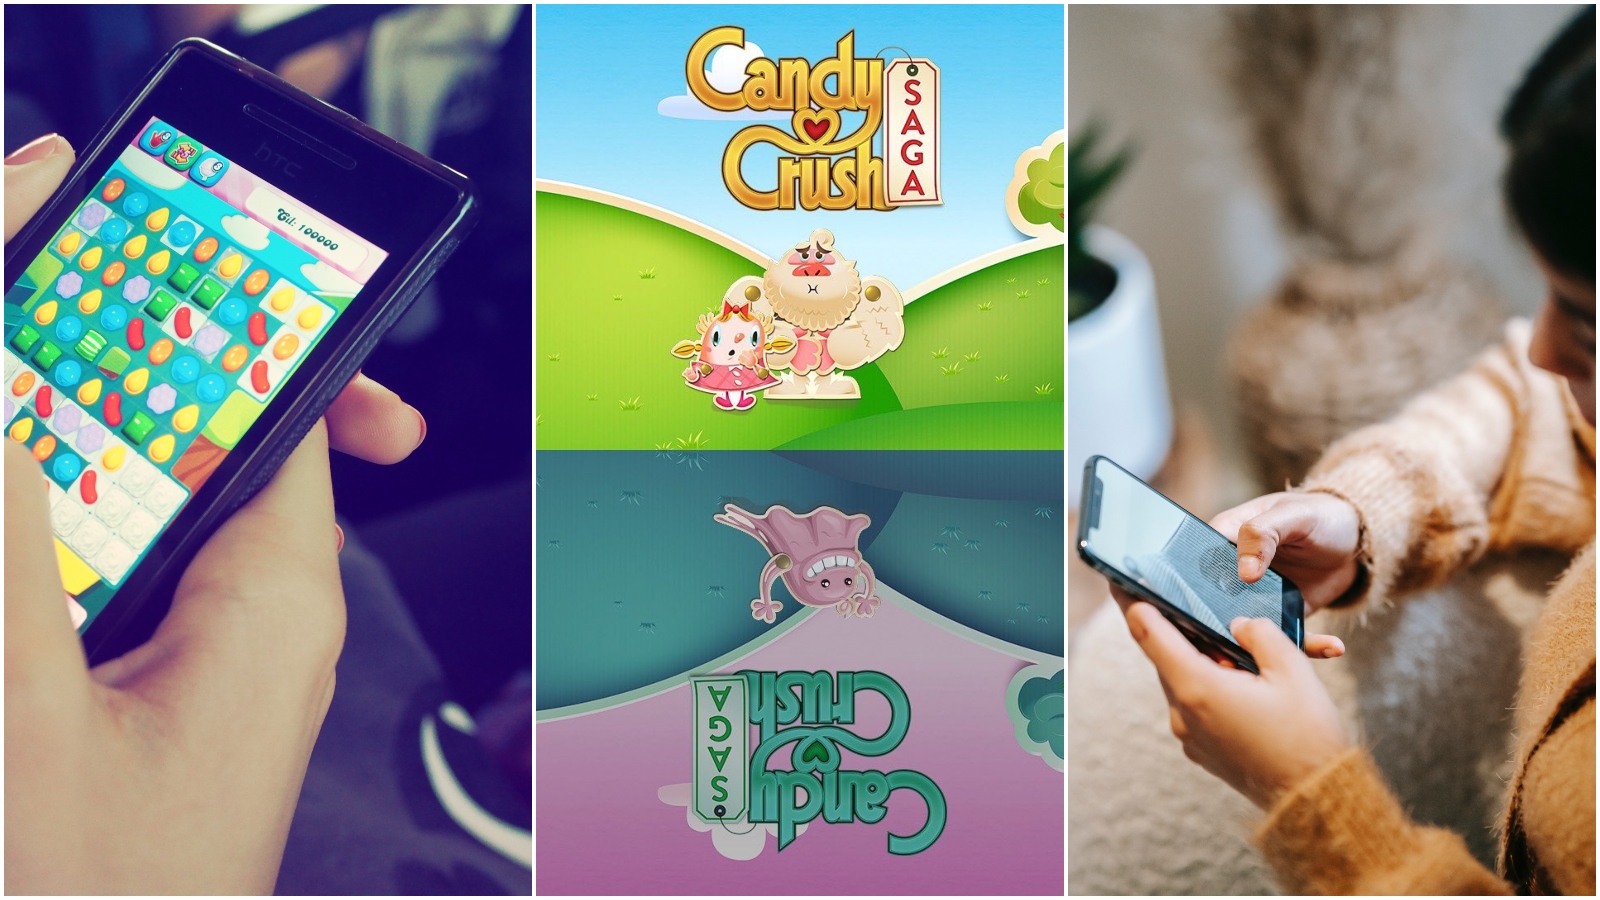 Legendarna igrica Candy Crush slavi deset godina postojanja